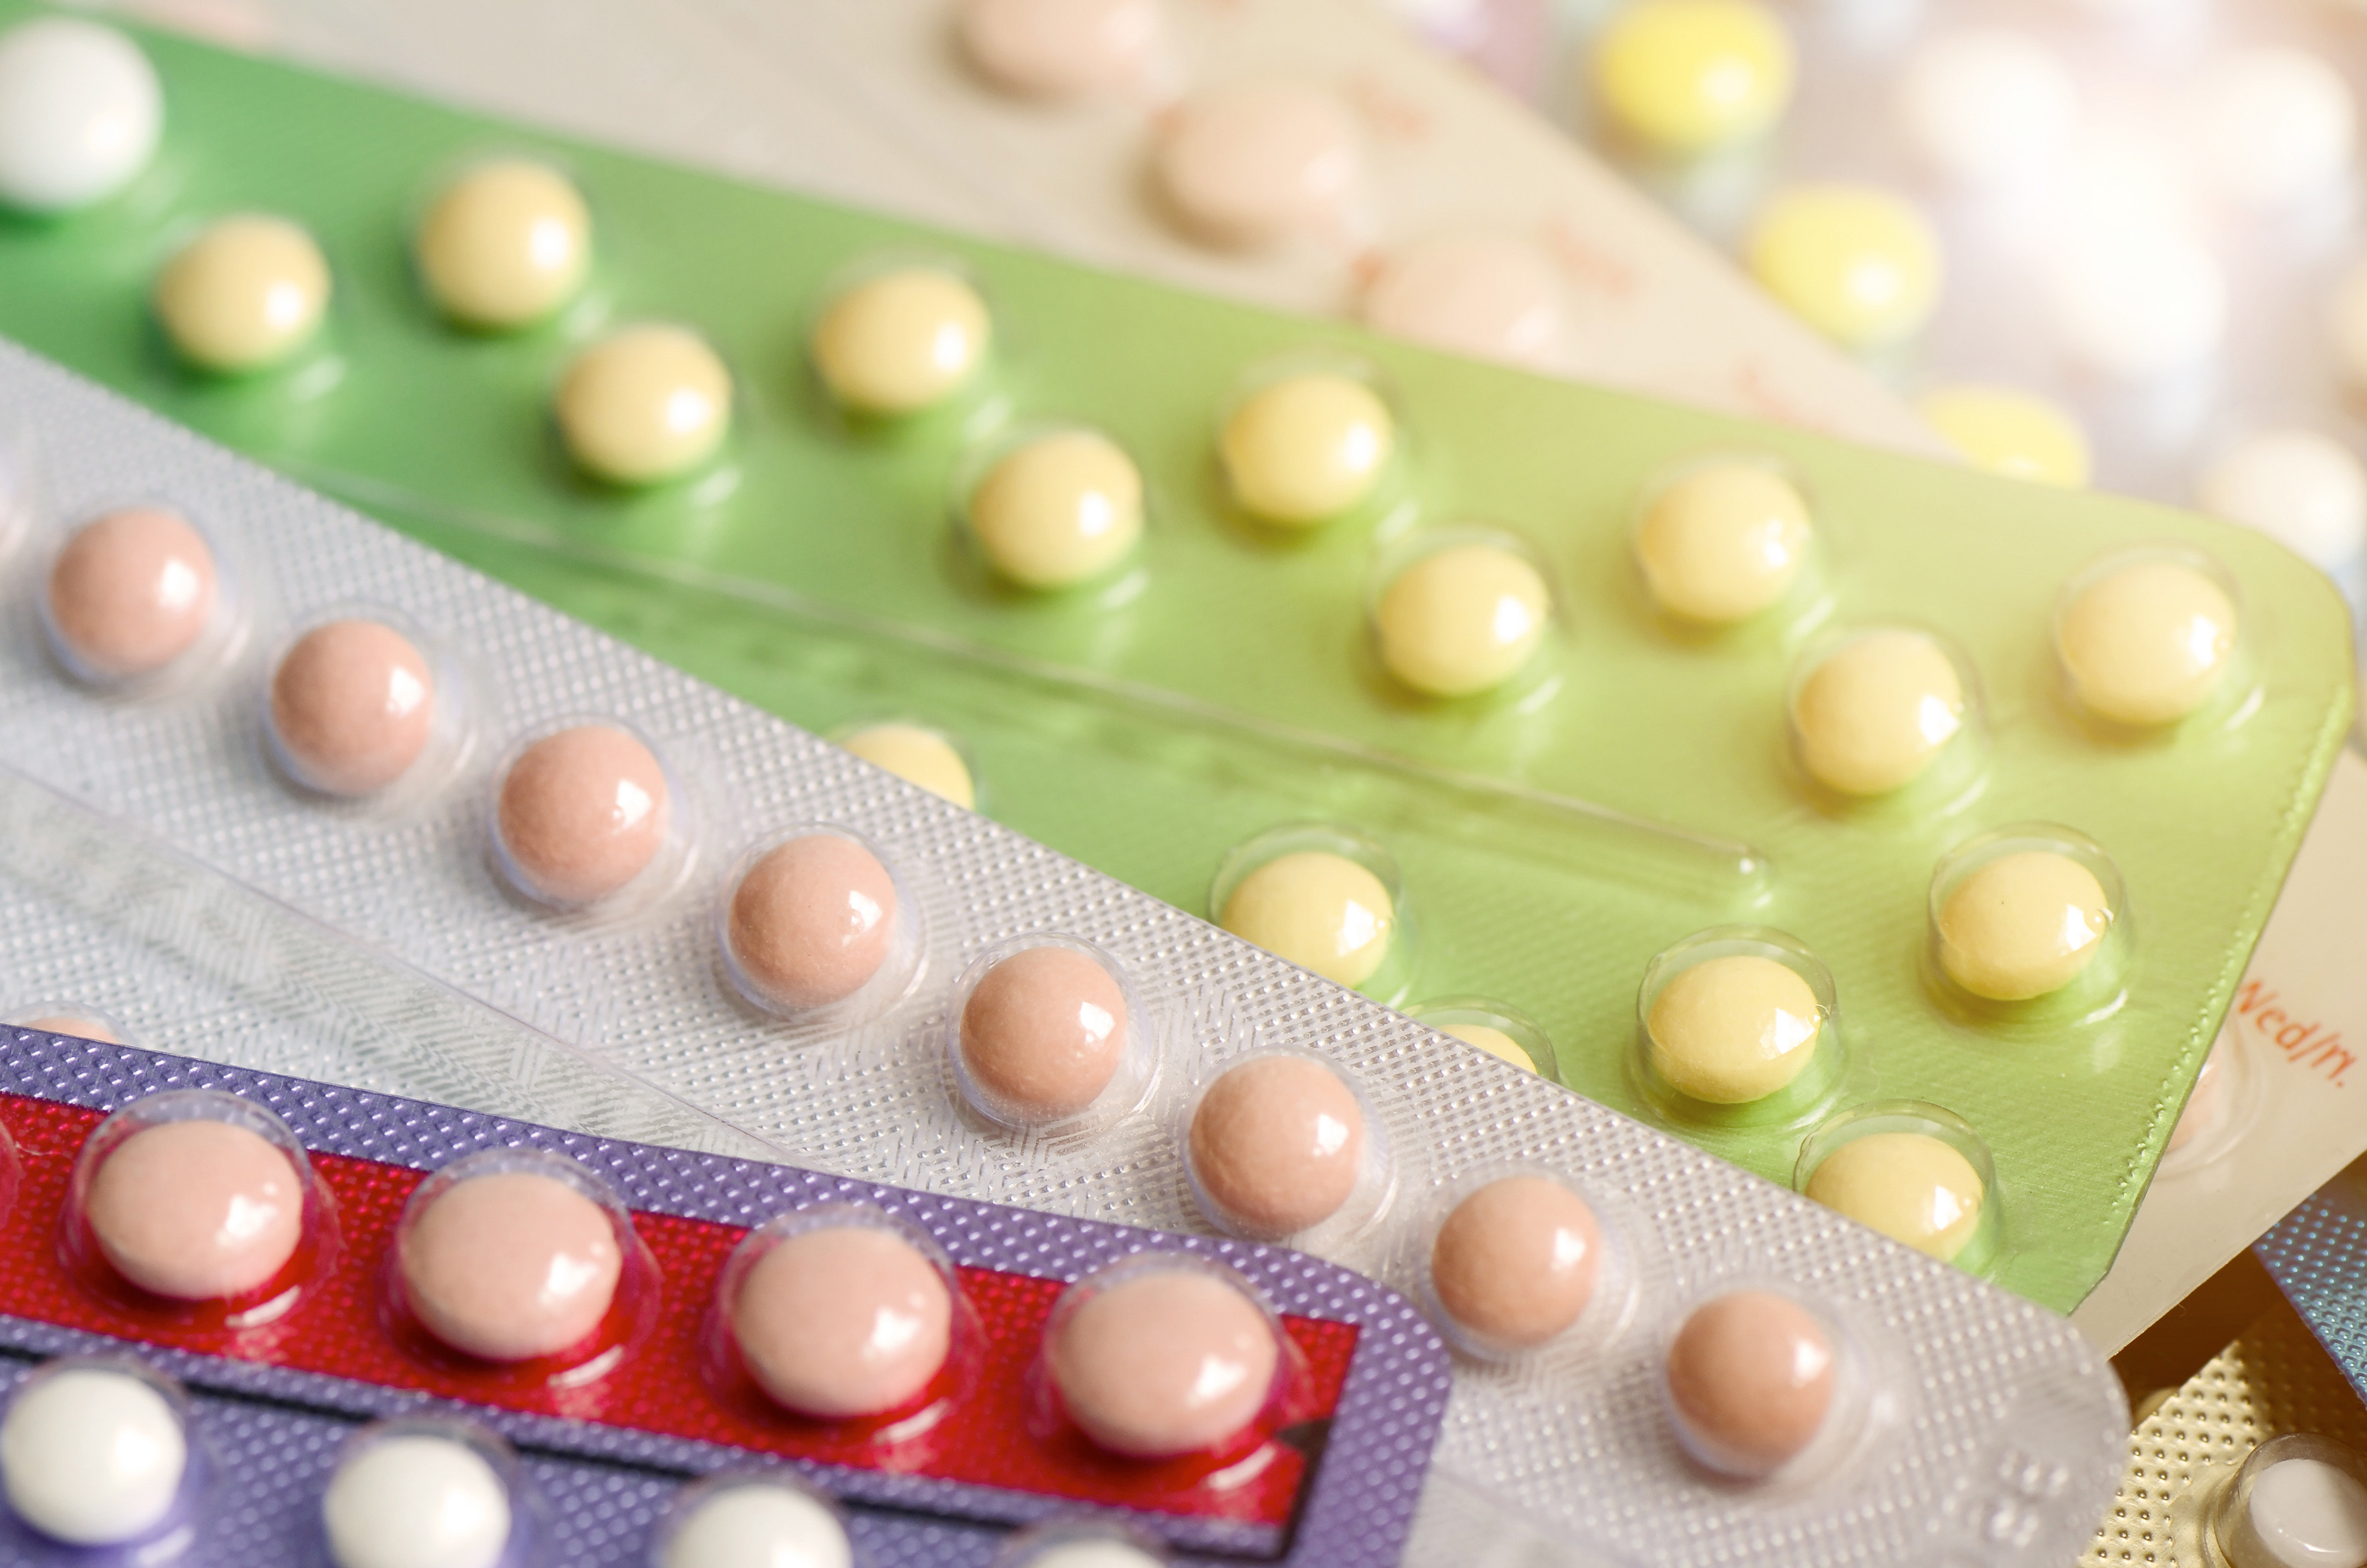 Prise de contraception hormonale chez les femmes : le risque de thrombose diminue rapidement à l’arrêt de la prise 